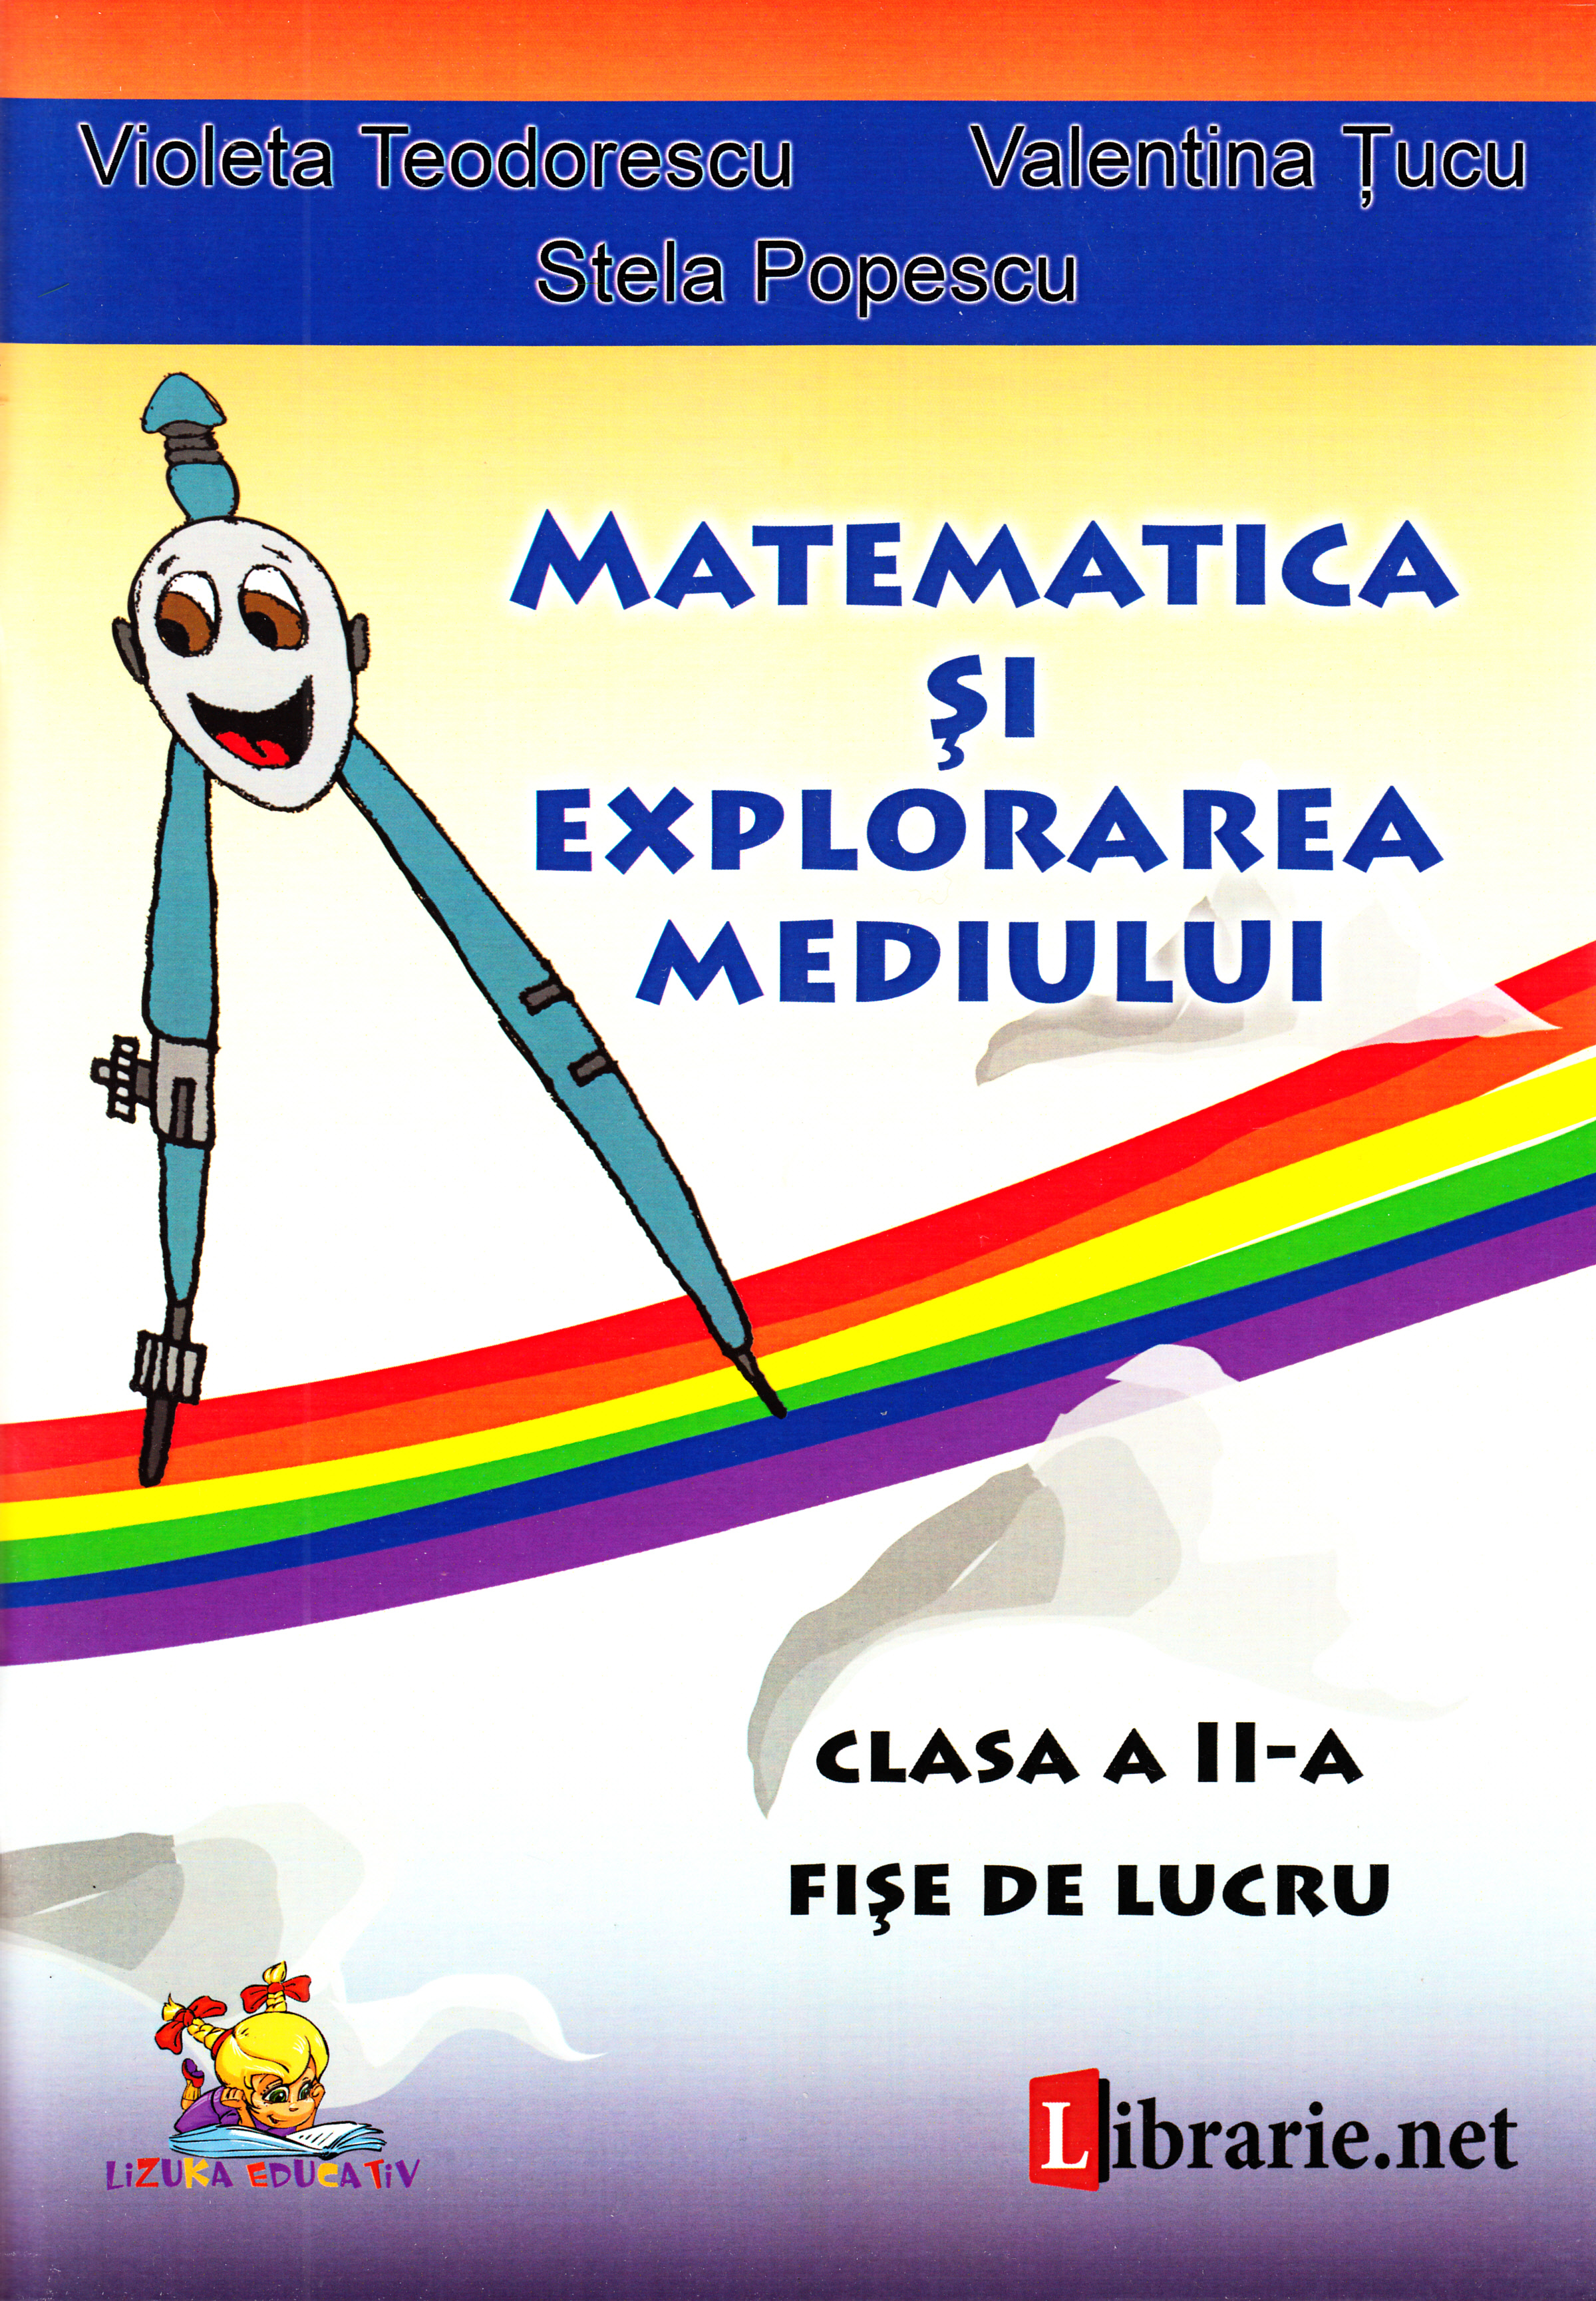 Matematica si explorarea mediului - Clasa 2 - Fise de lucru - Violeta Teodorescu, Valentina Tucu